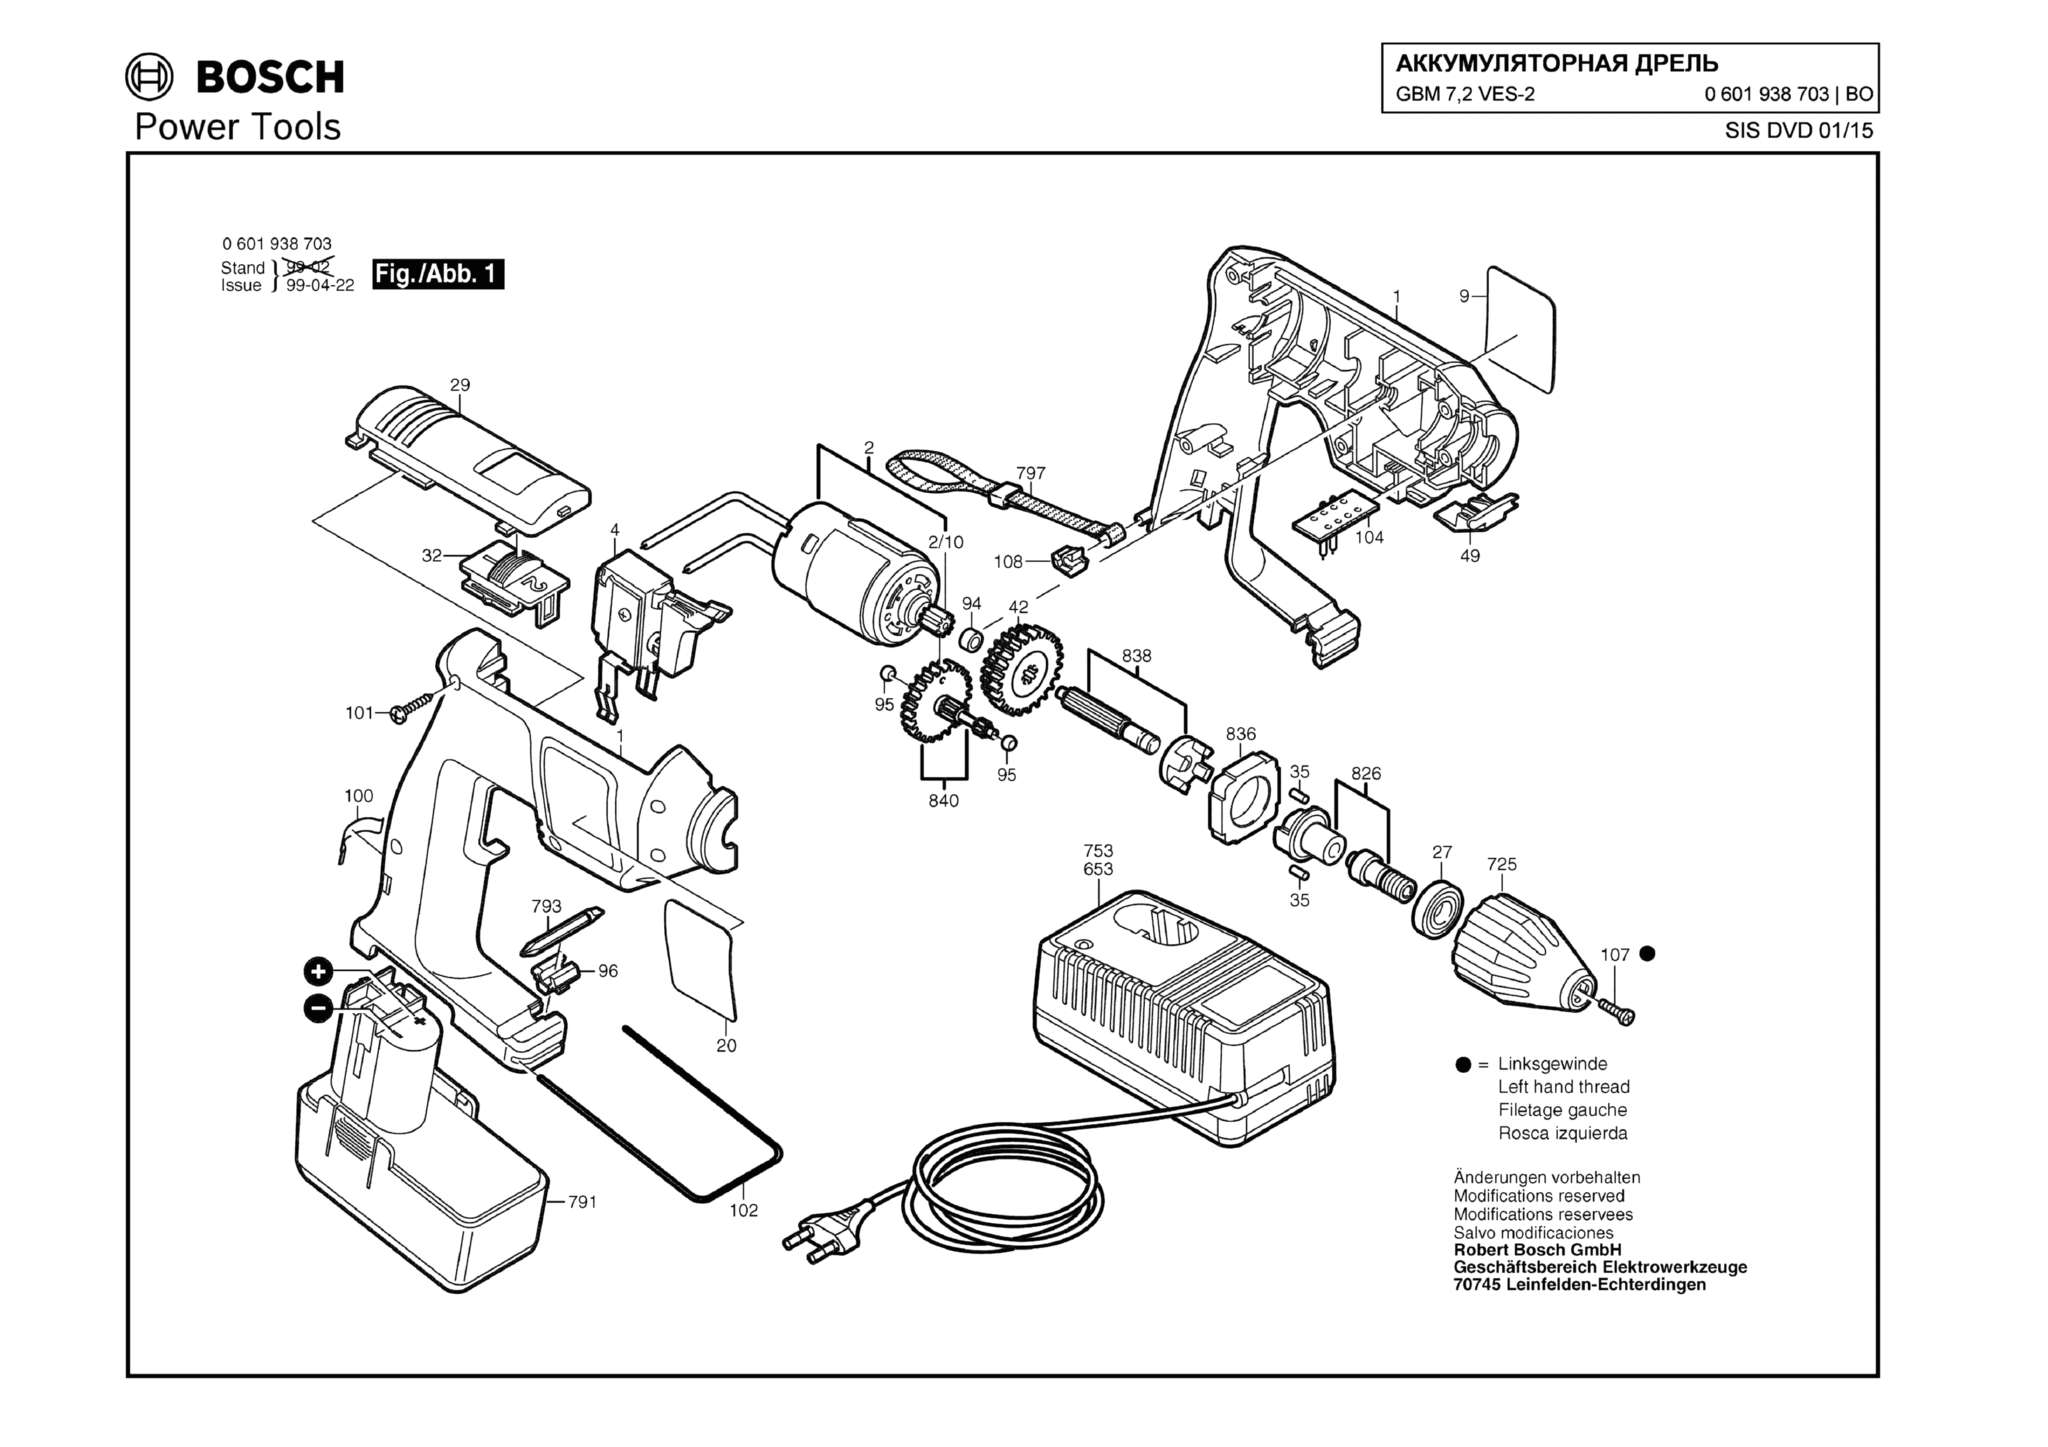 Запчасти, схема и деталировка Bosch GBM 7,2 VES-2 (ТИП 0601938703)